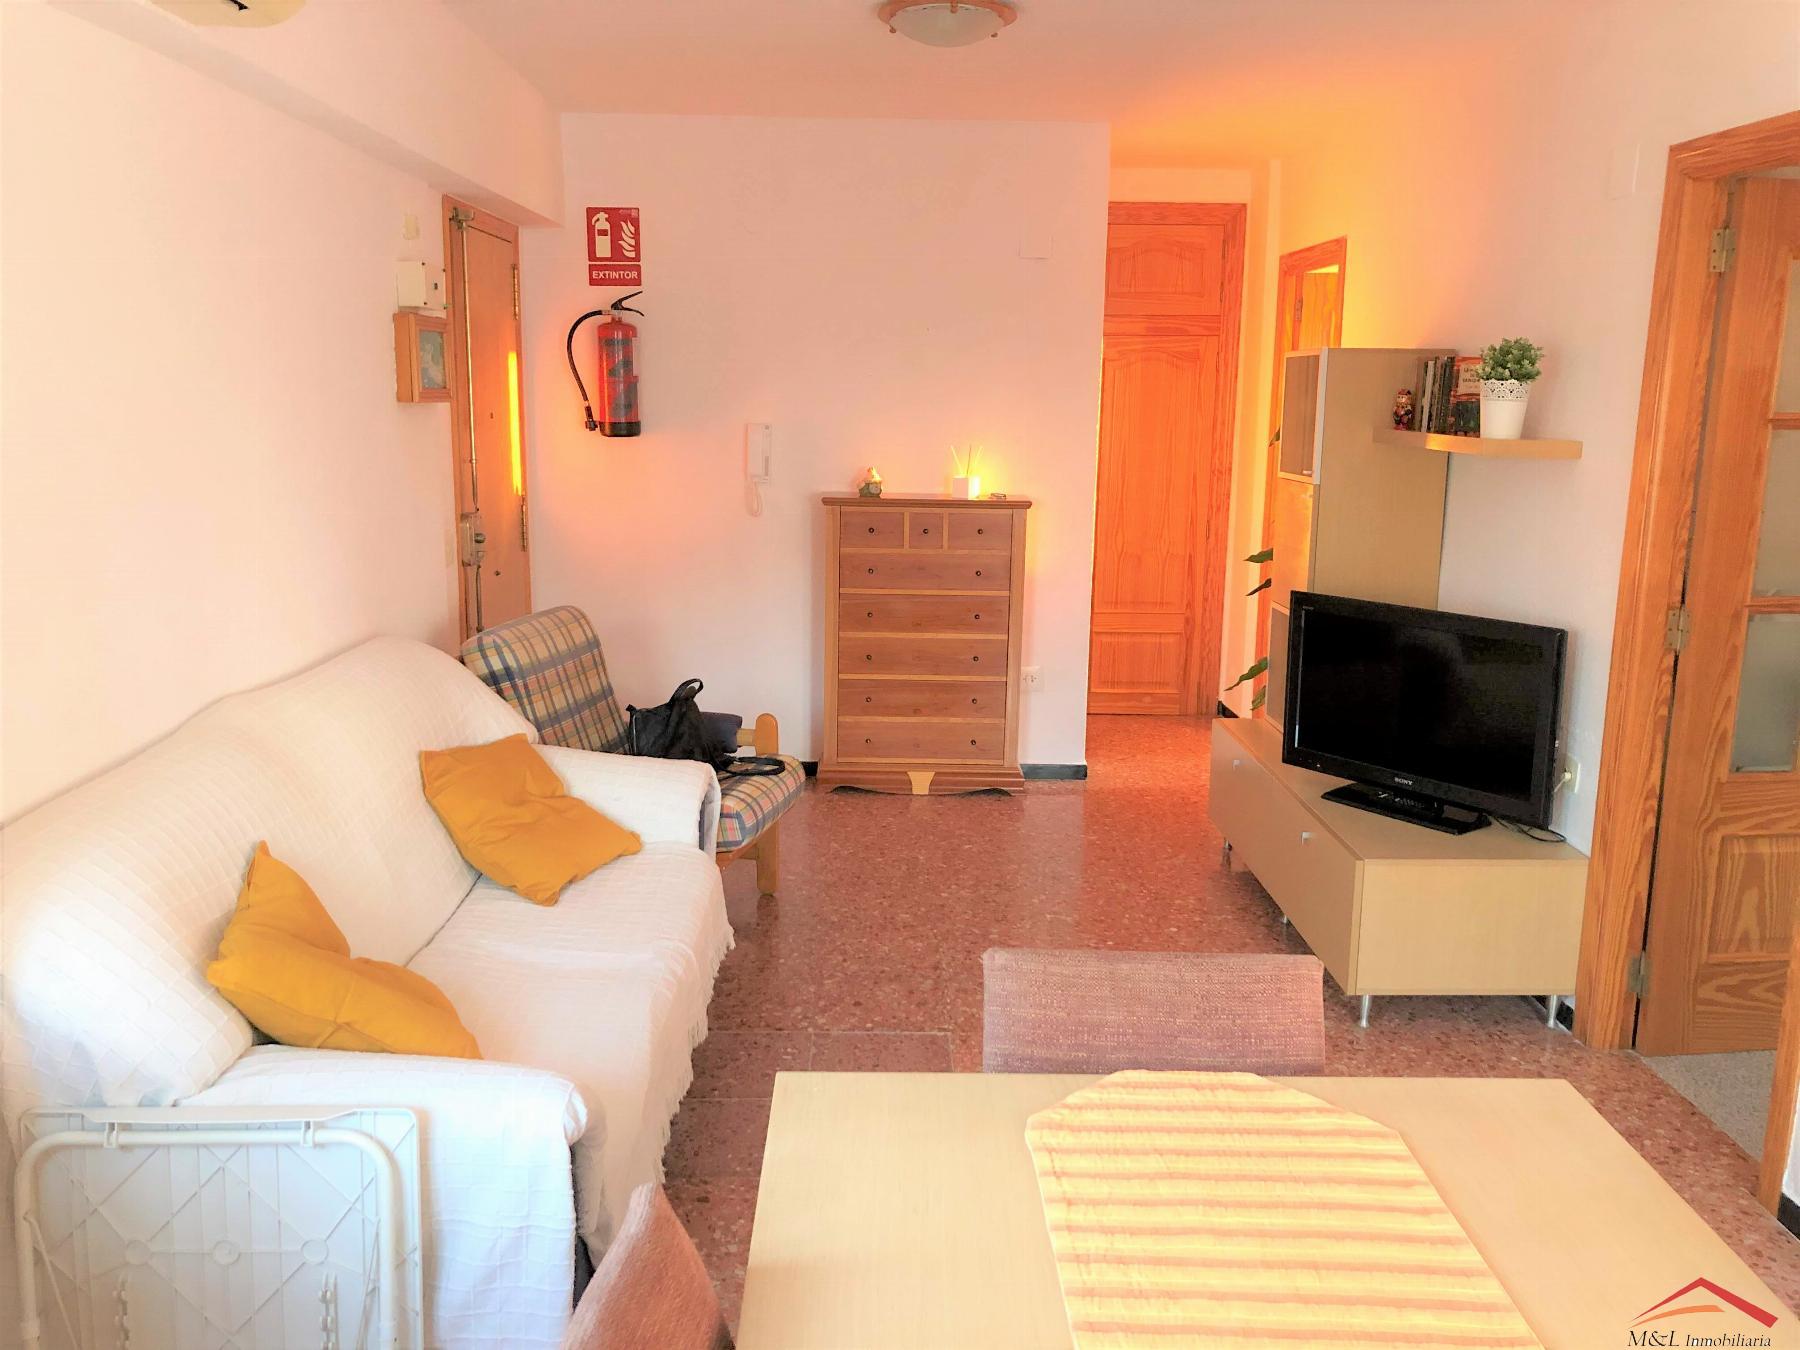 For sale of apartment in La Puebla de Farnals